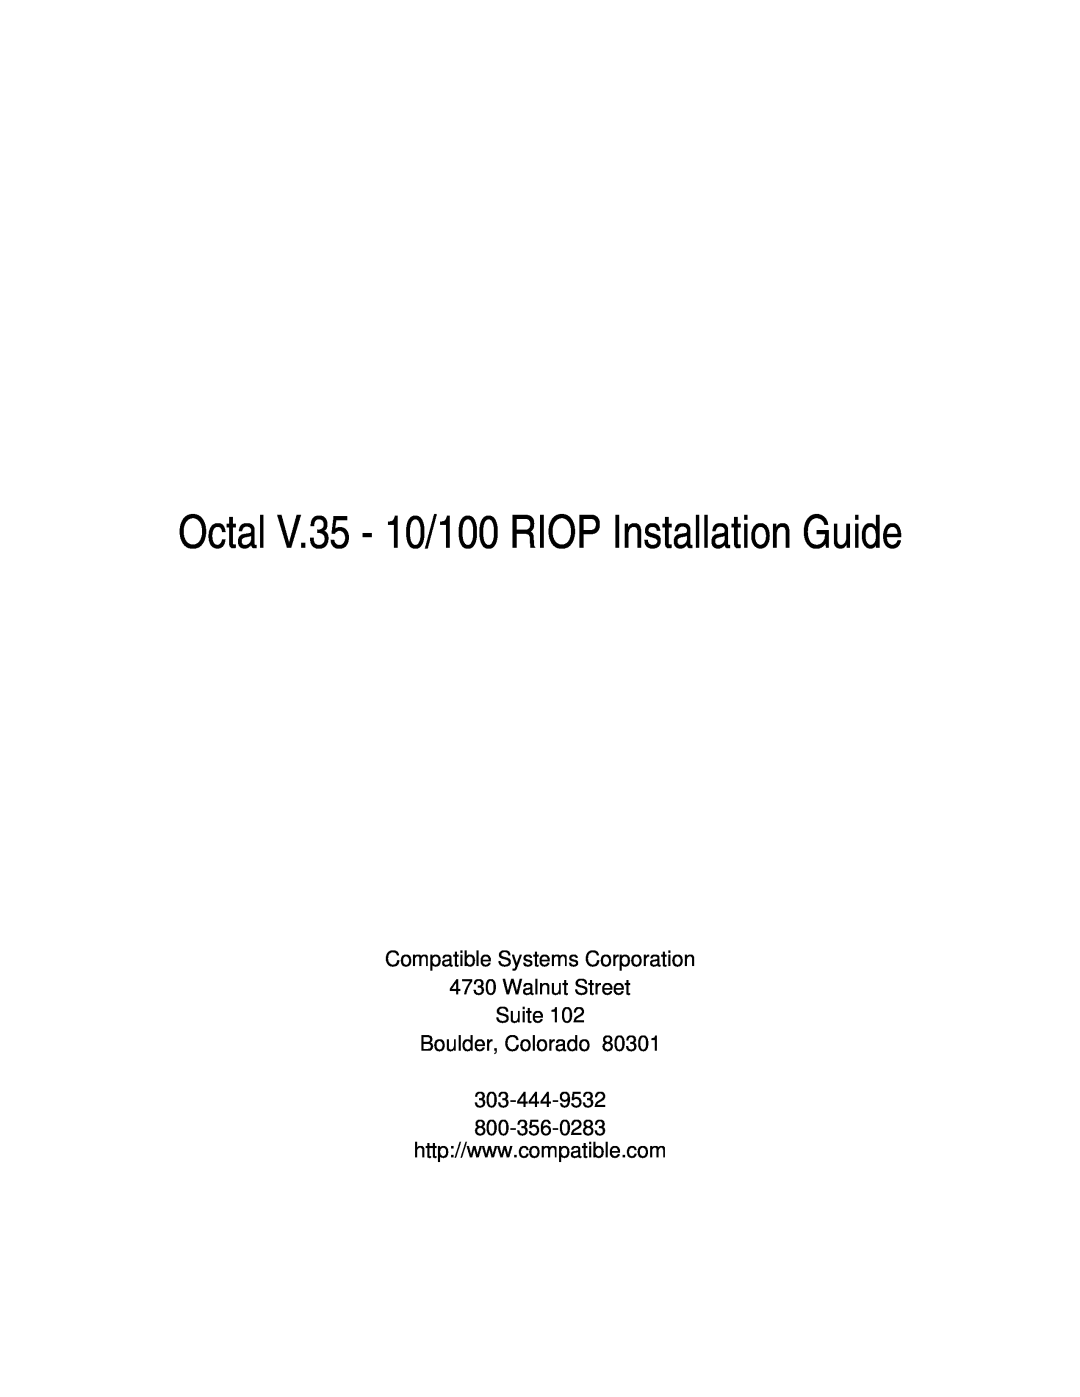 Compatible Systems manual Octal V.35 - 10/100 RIOP Installation Guide, Boulder, Colorado 